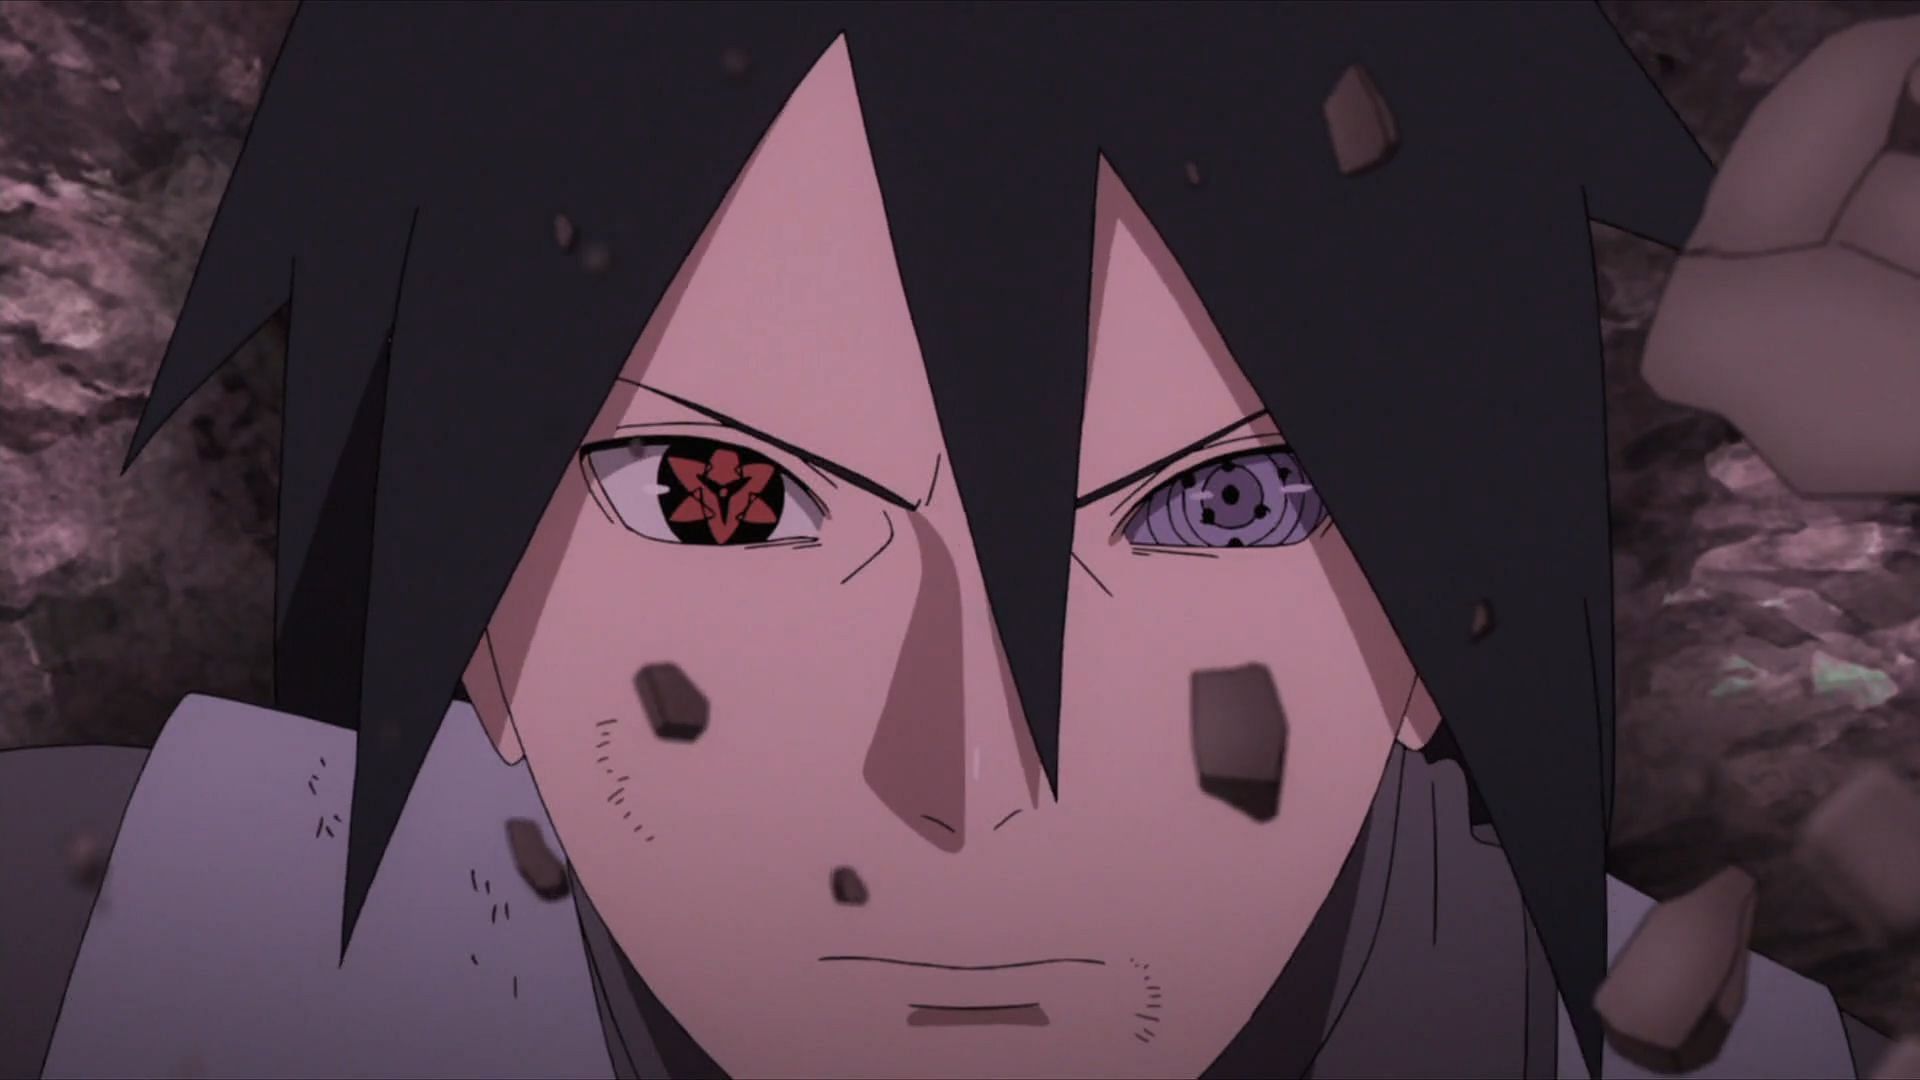 Uchiha Sasuke as shown in Boruto: Naruto Next Generations (Image via Studio Pierrot)